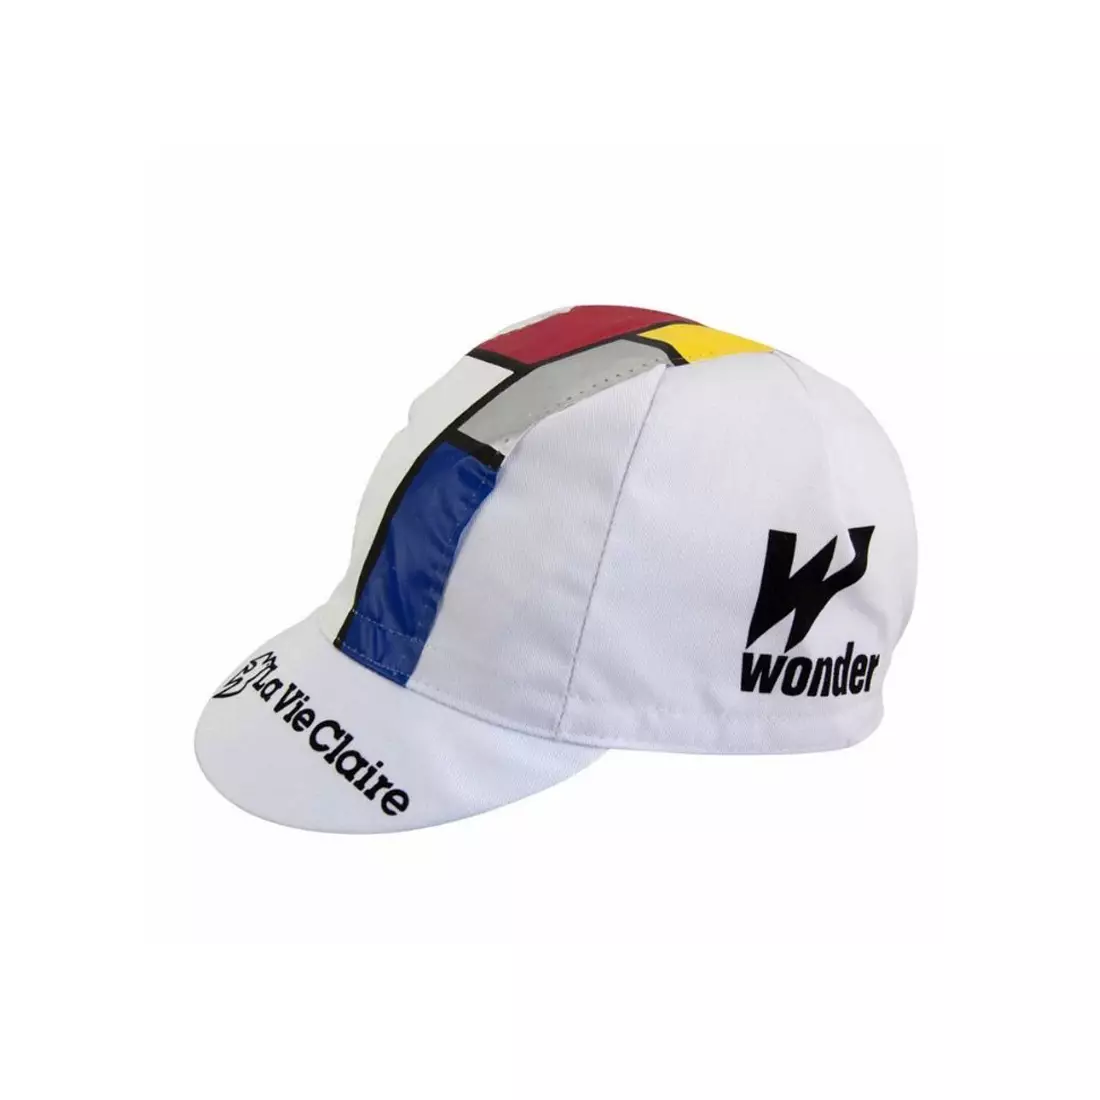 APIS PROFI LA VIE CLAIRE Cycling cap with a visor